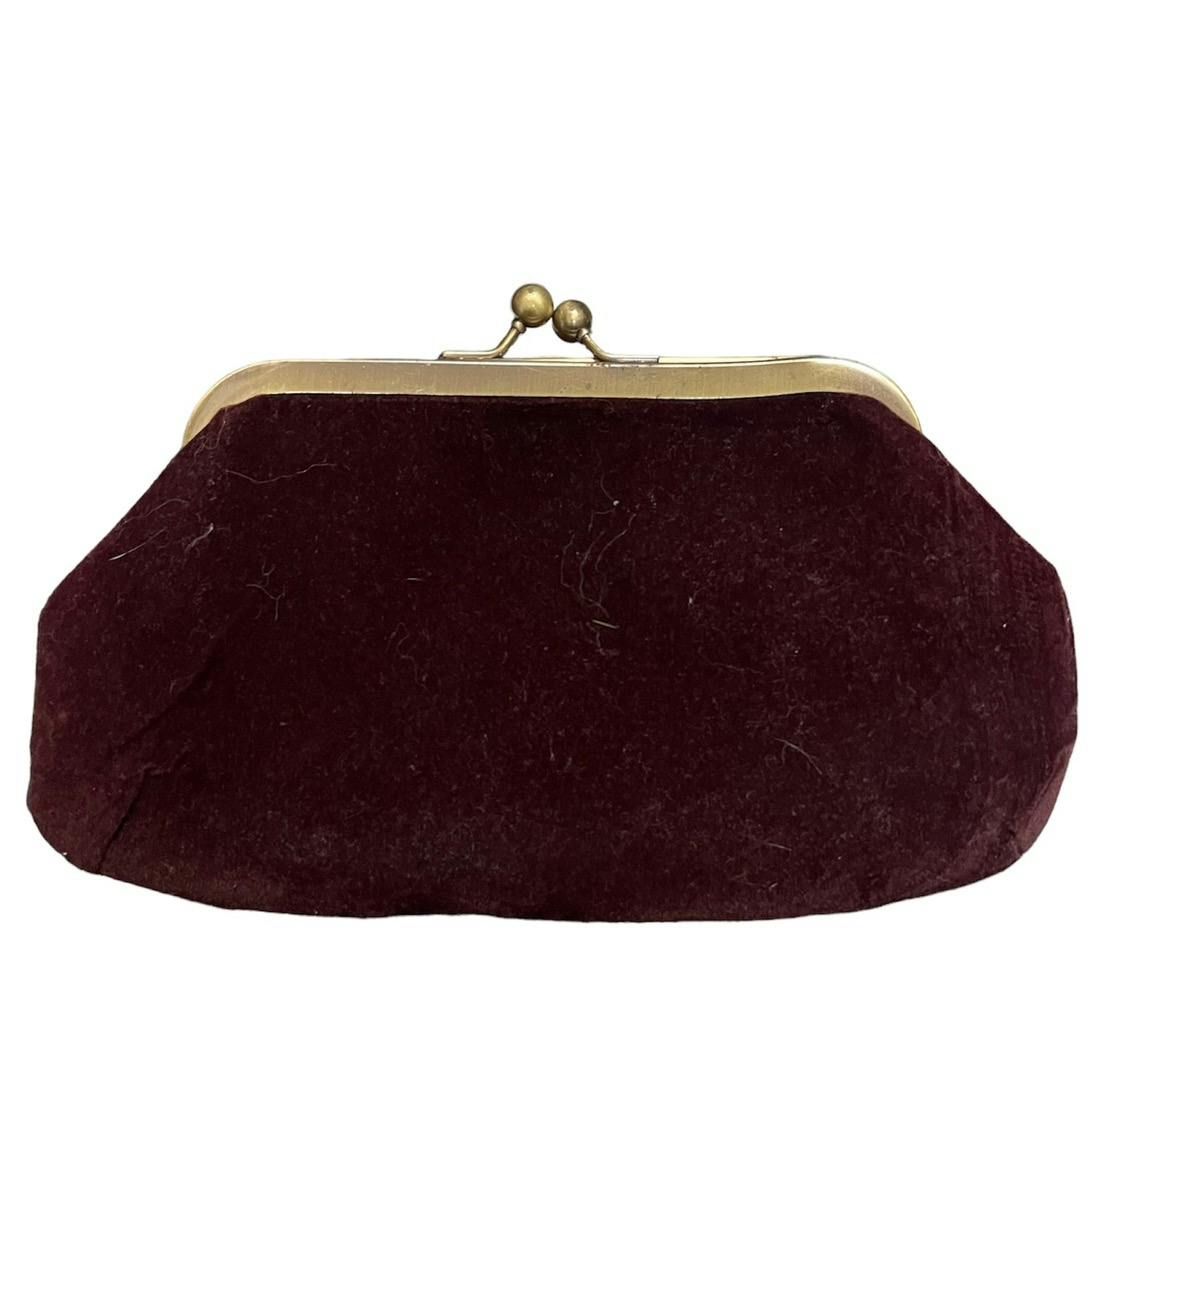 Dolce & Gabbana coin purse - 2